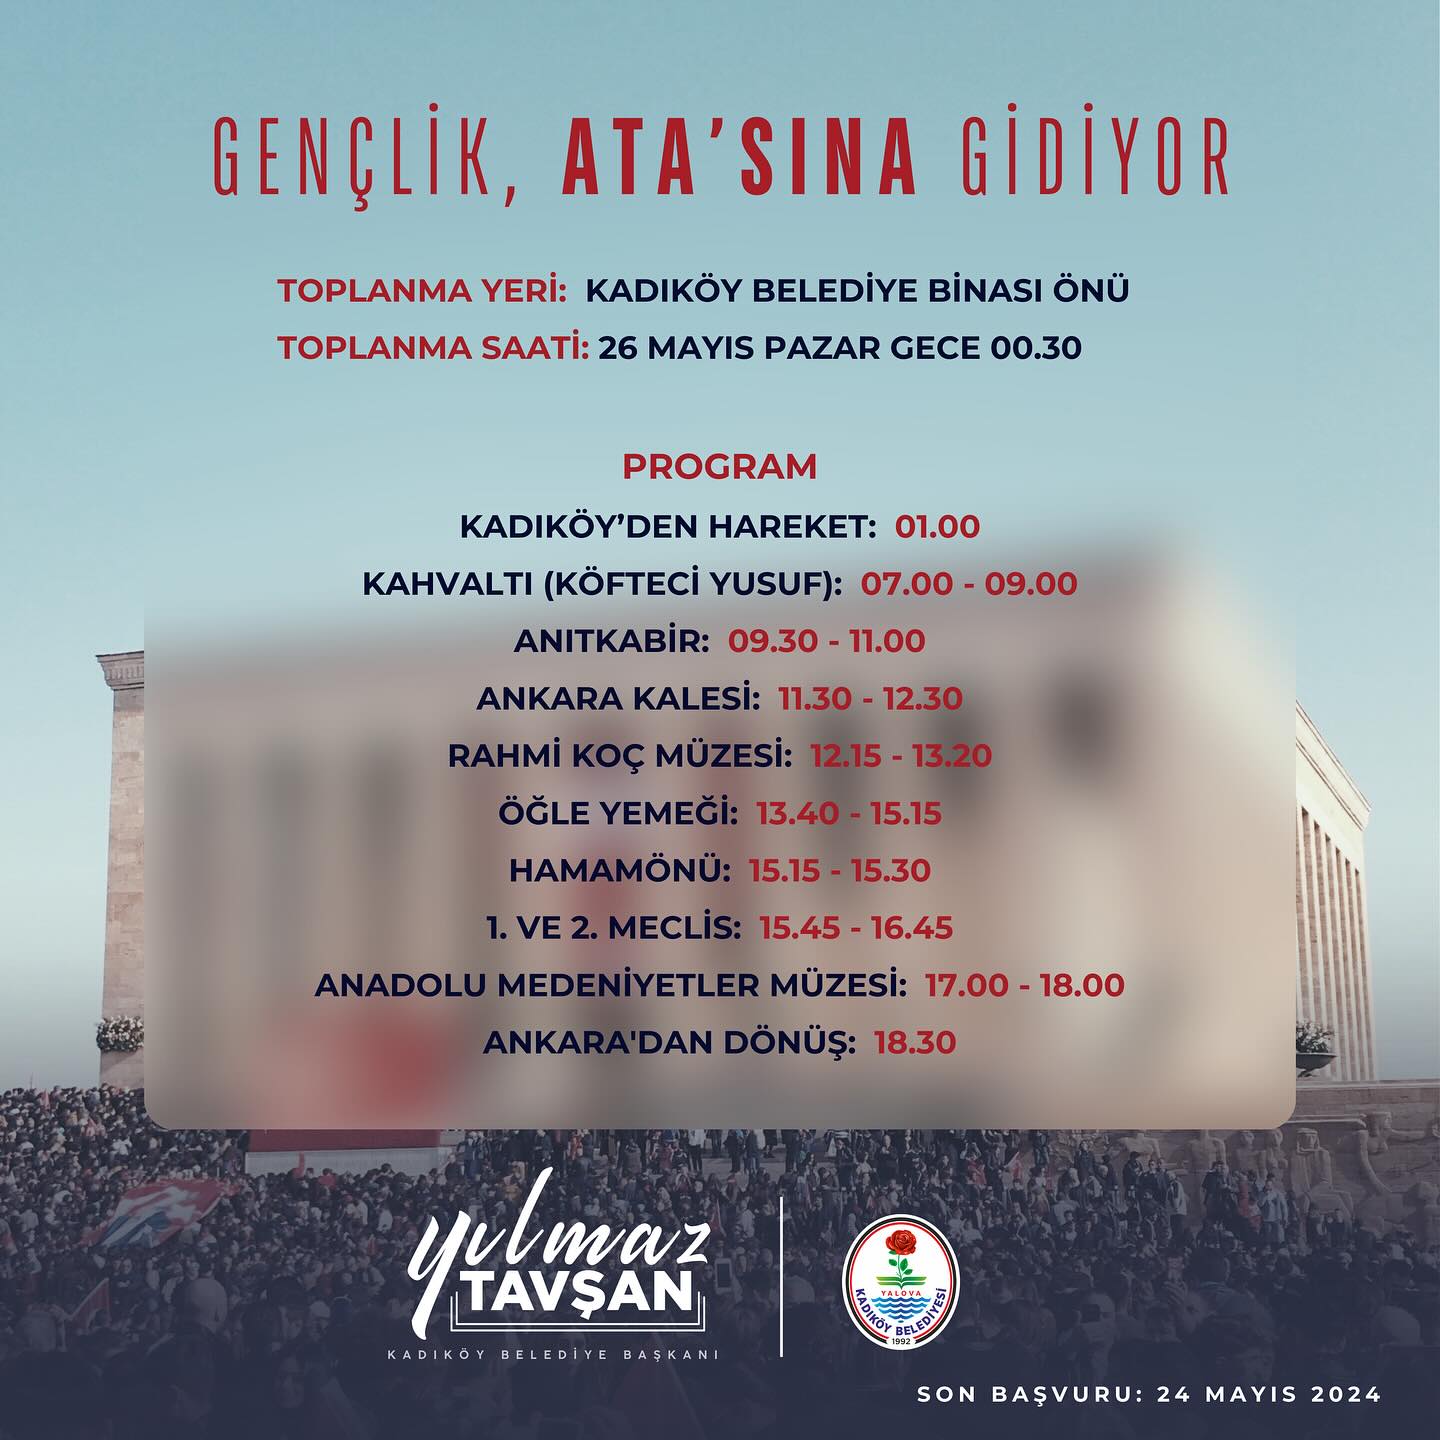 Yalova Kadikoy Ankara Belediye Gezi Anitkabir Gencler (3)